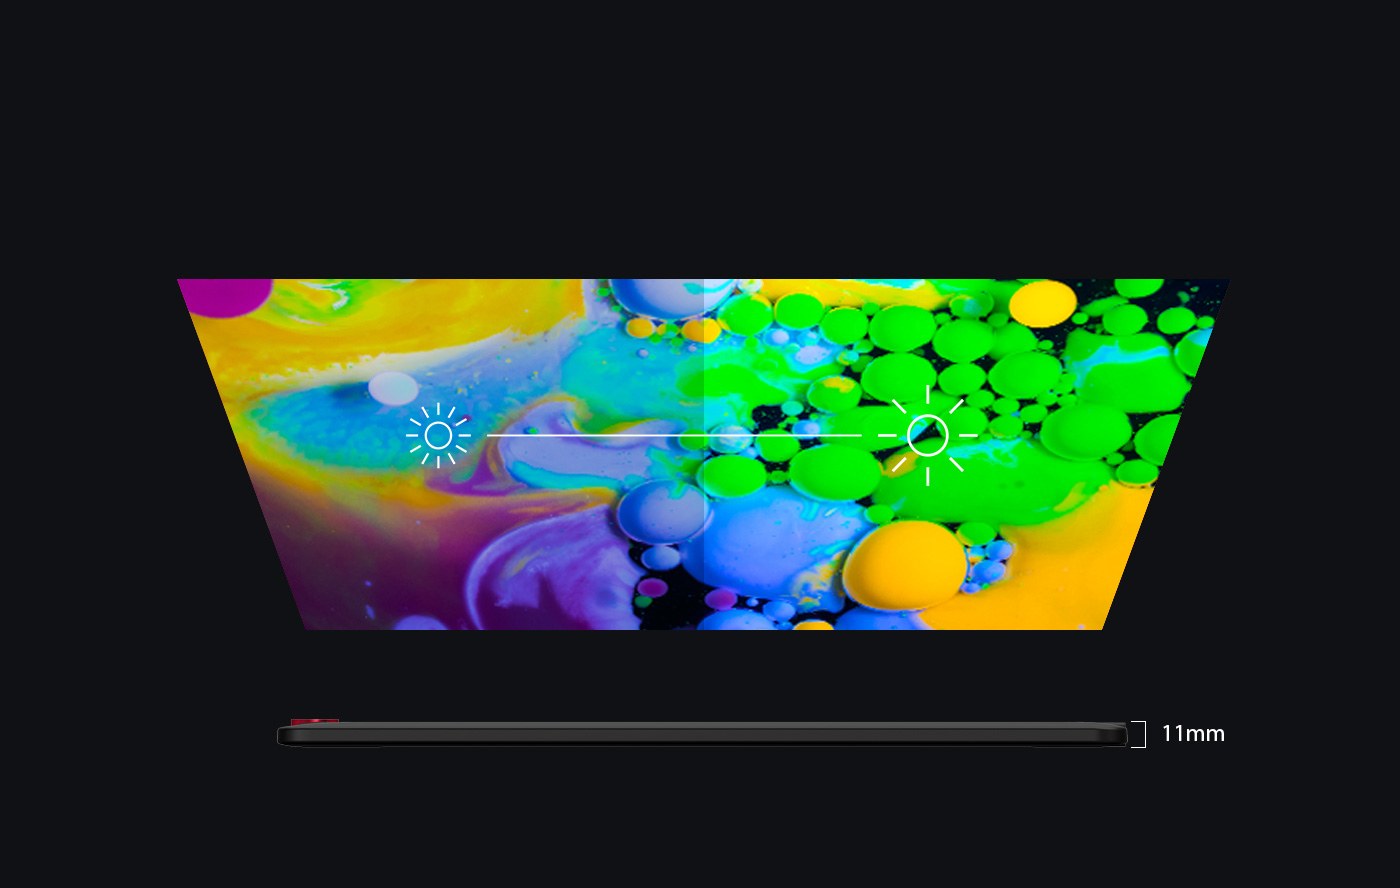 XP-Pen Artist 15.6 Pro tableta grafica portatil Diseño elegante e inteligente